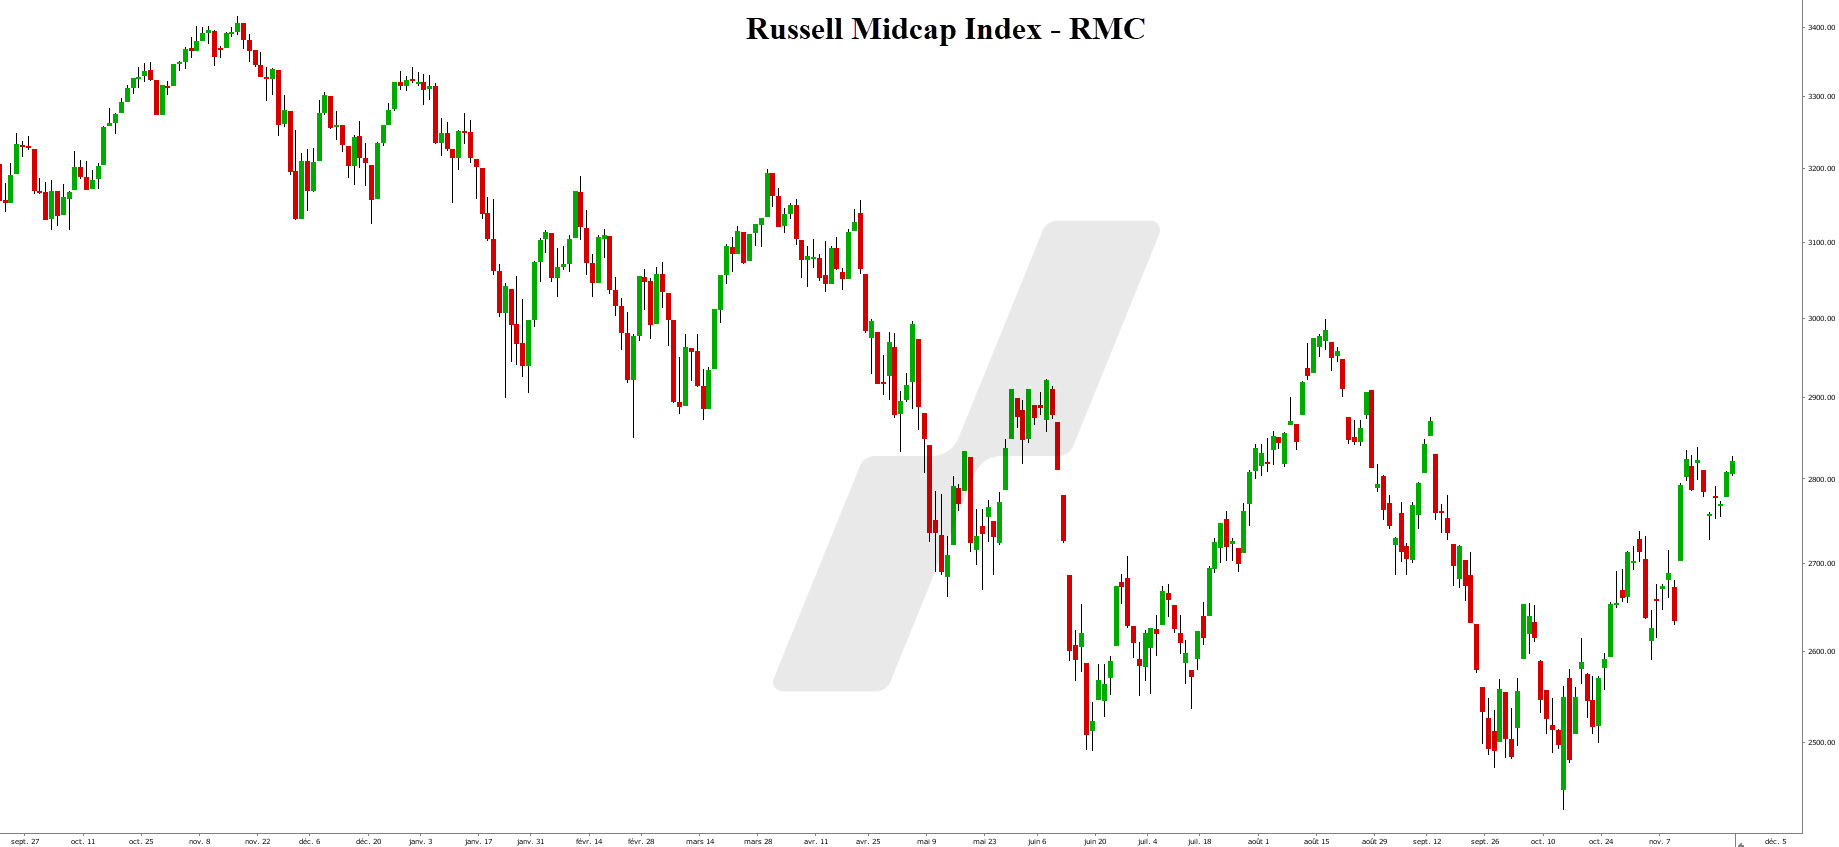 market cap - capitalisation boursière - Russell Midcap Index